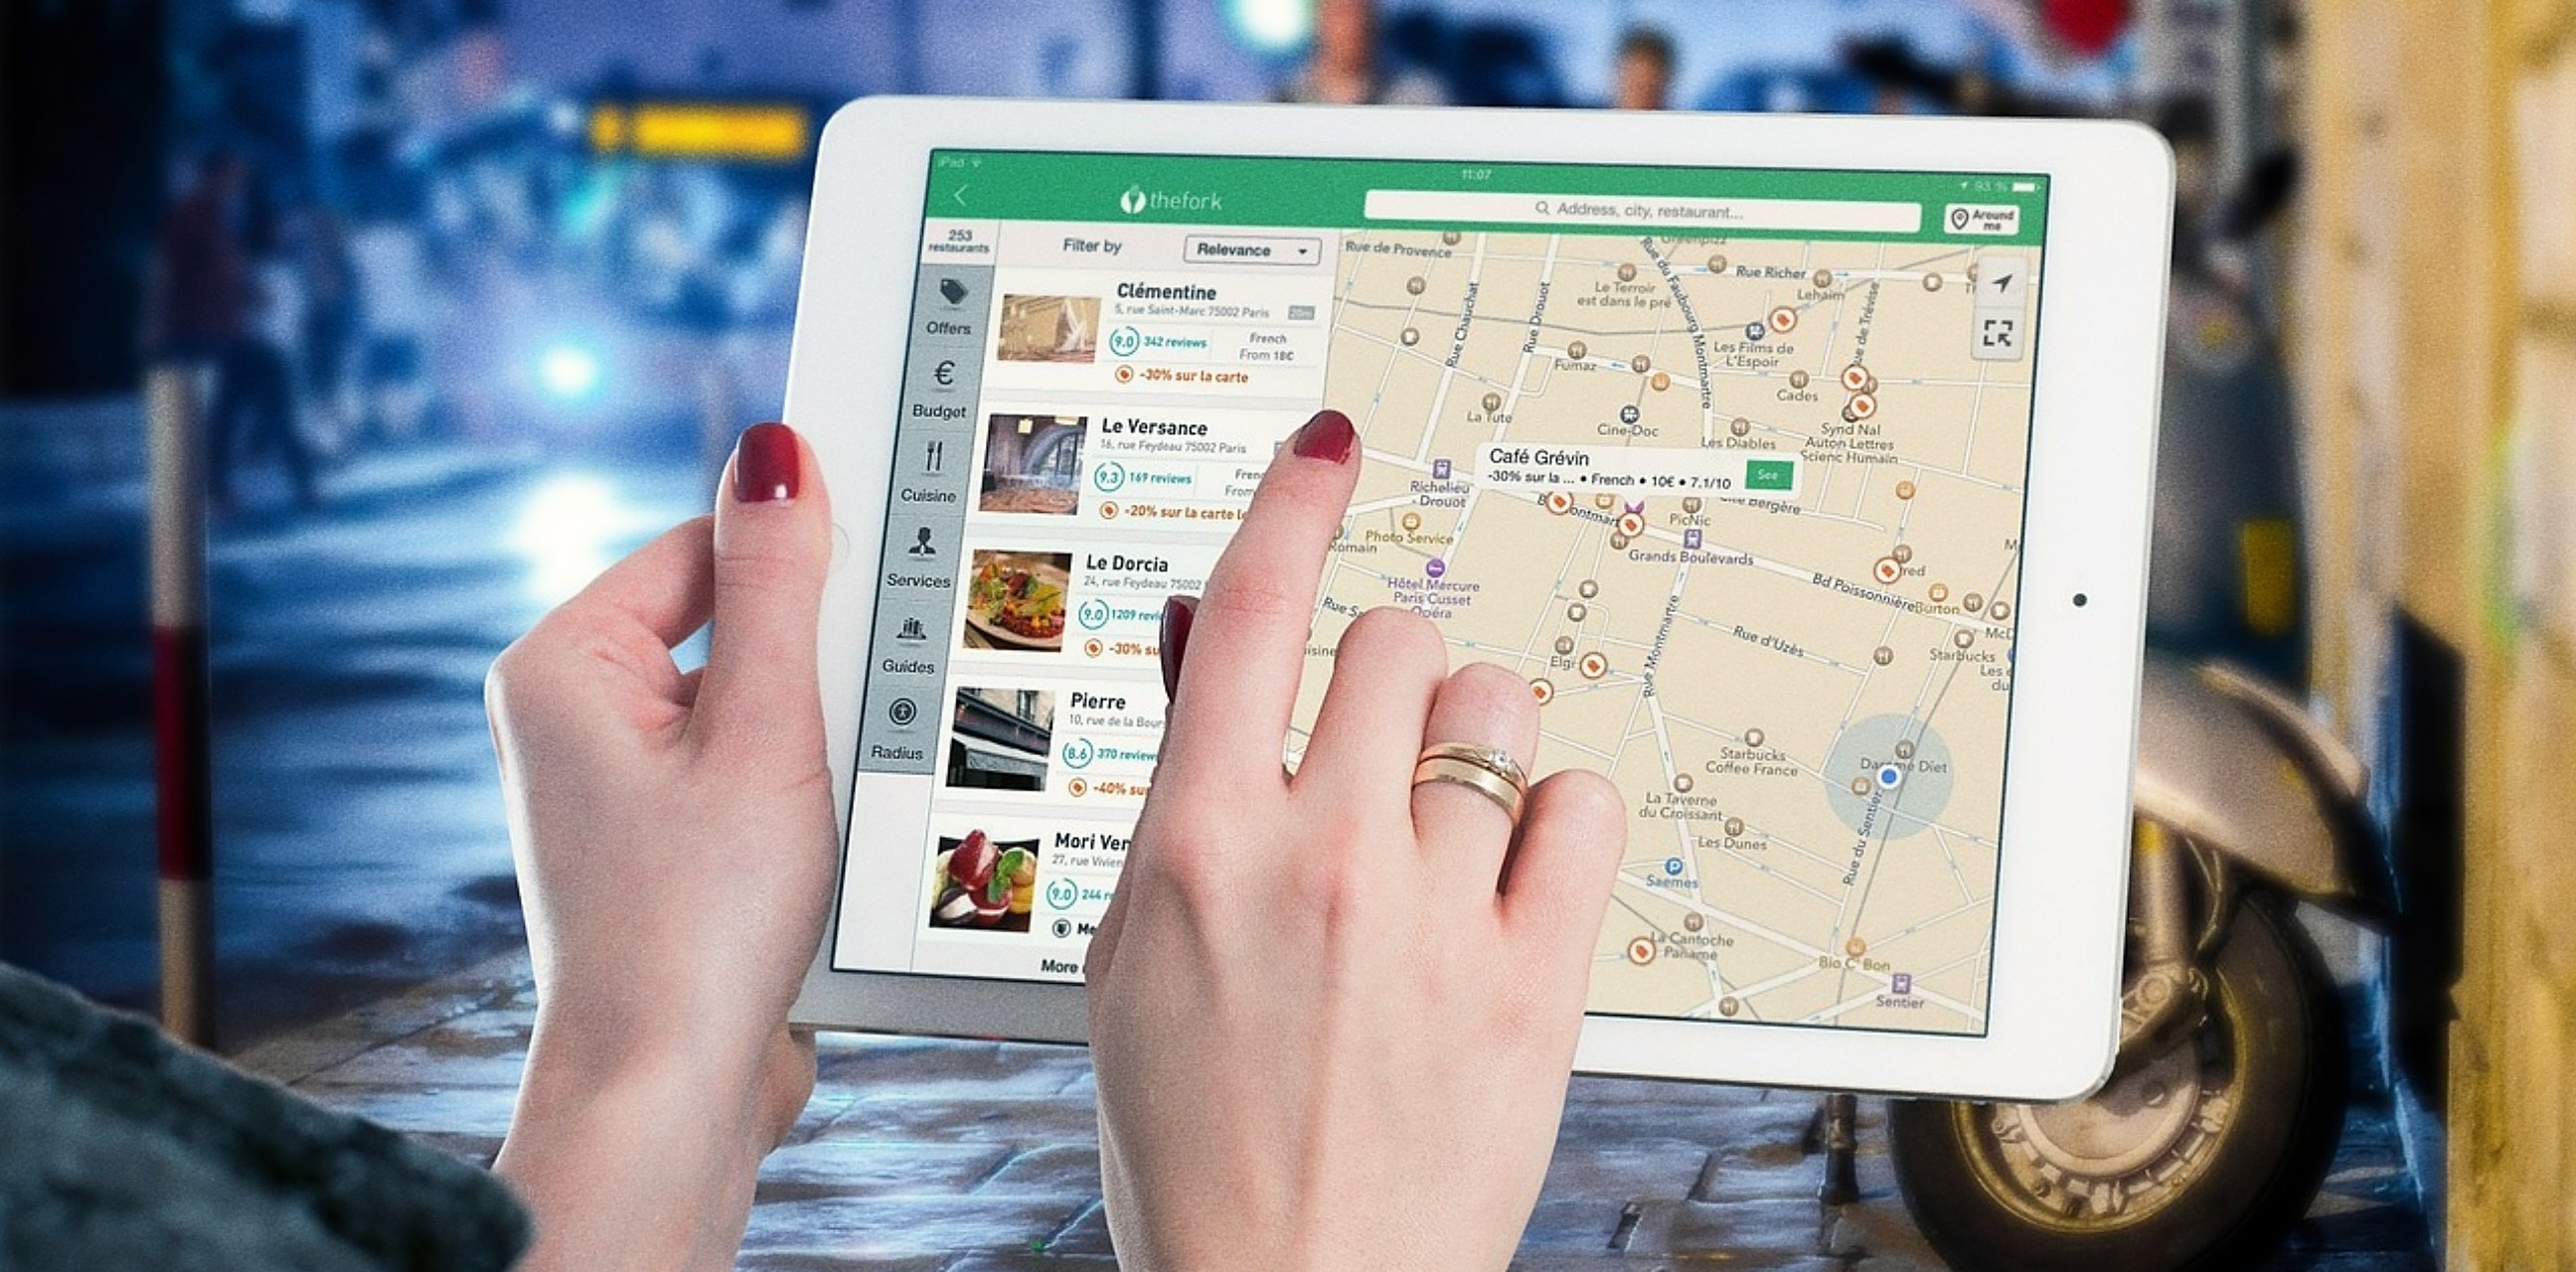 7 Fitur Google Maps yang dapat membantu navigasi saat liburan